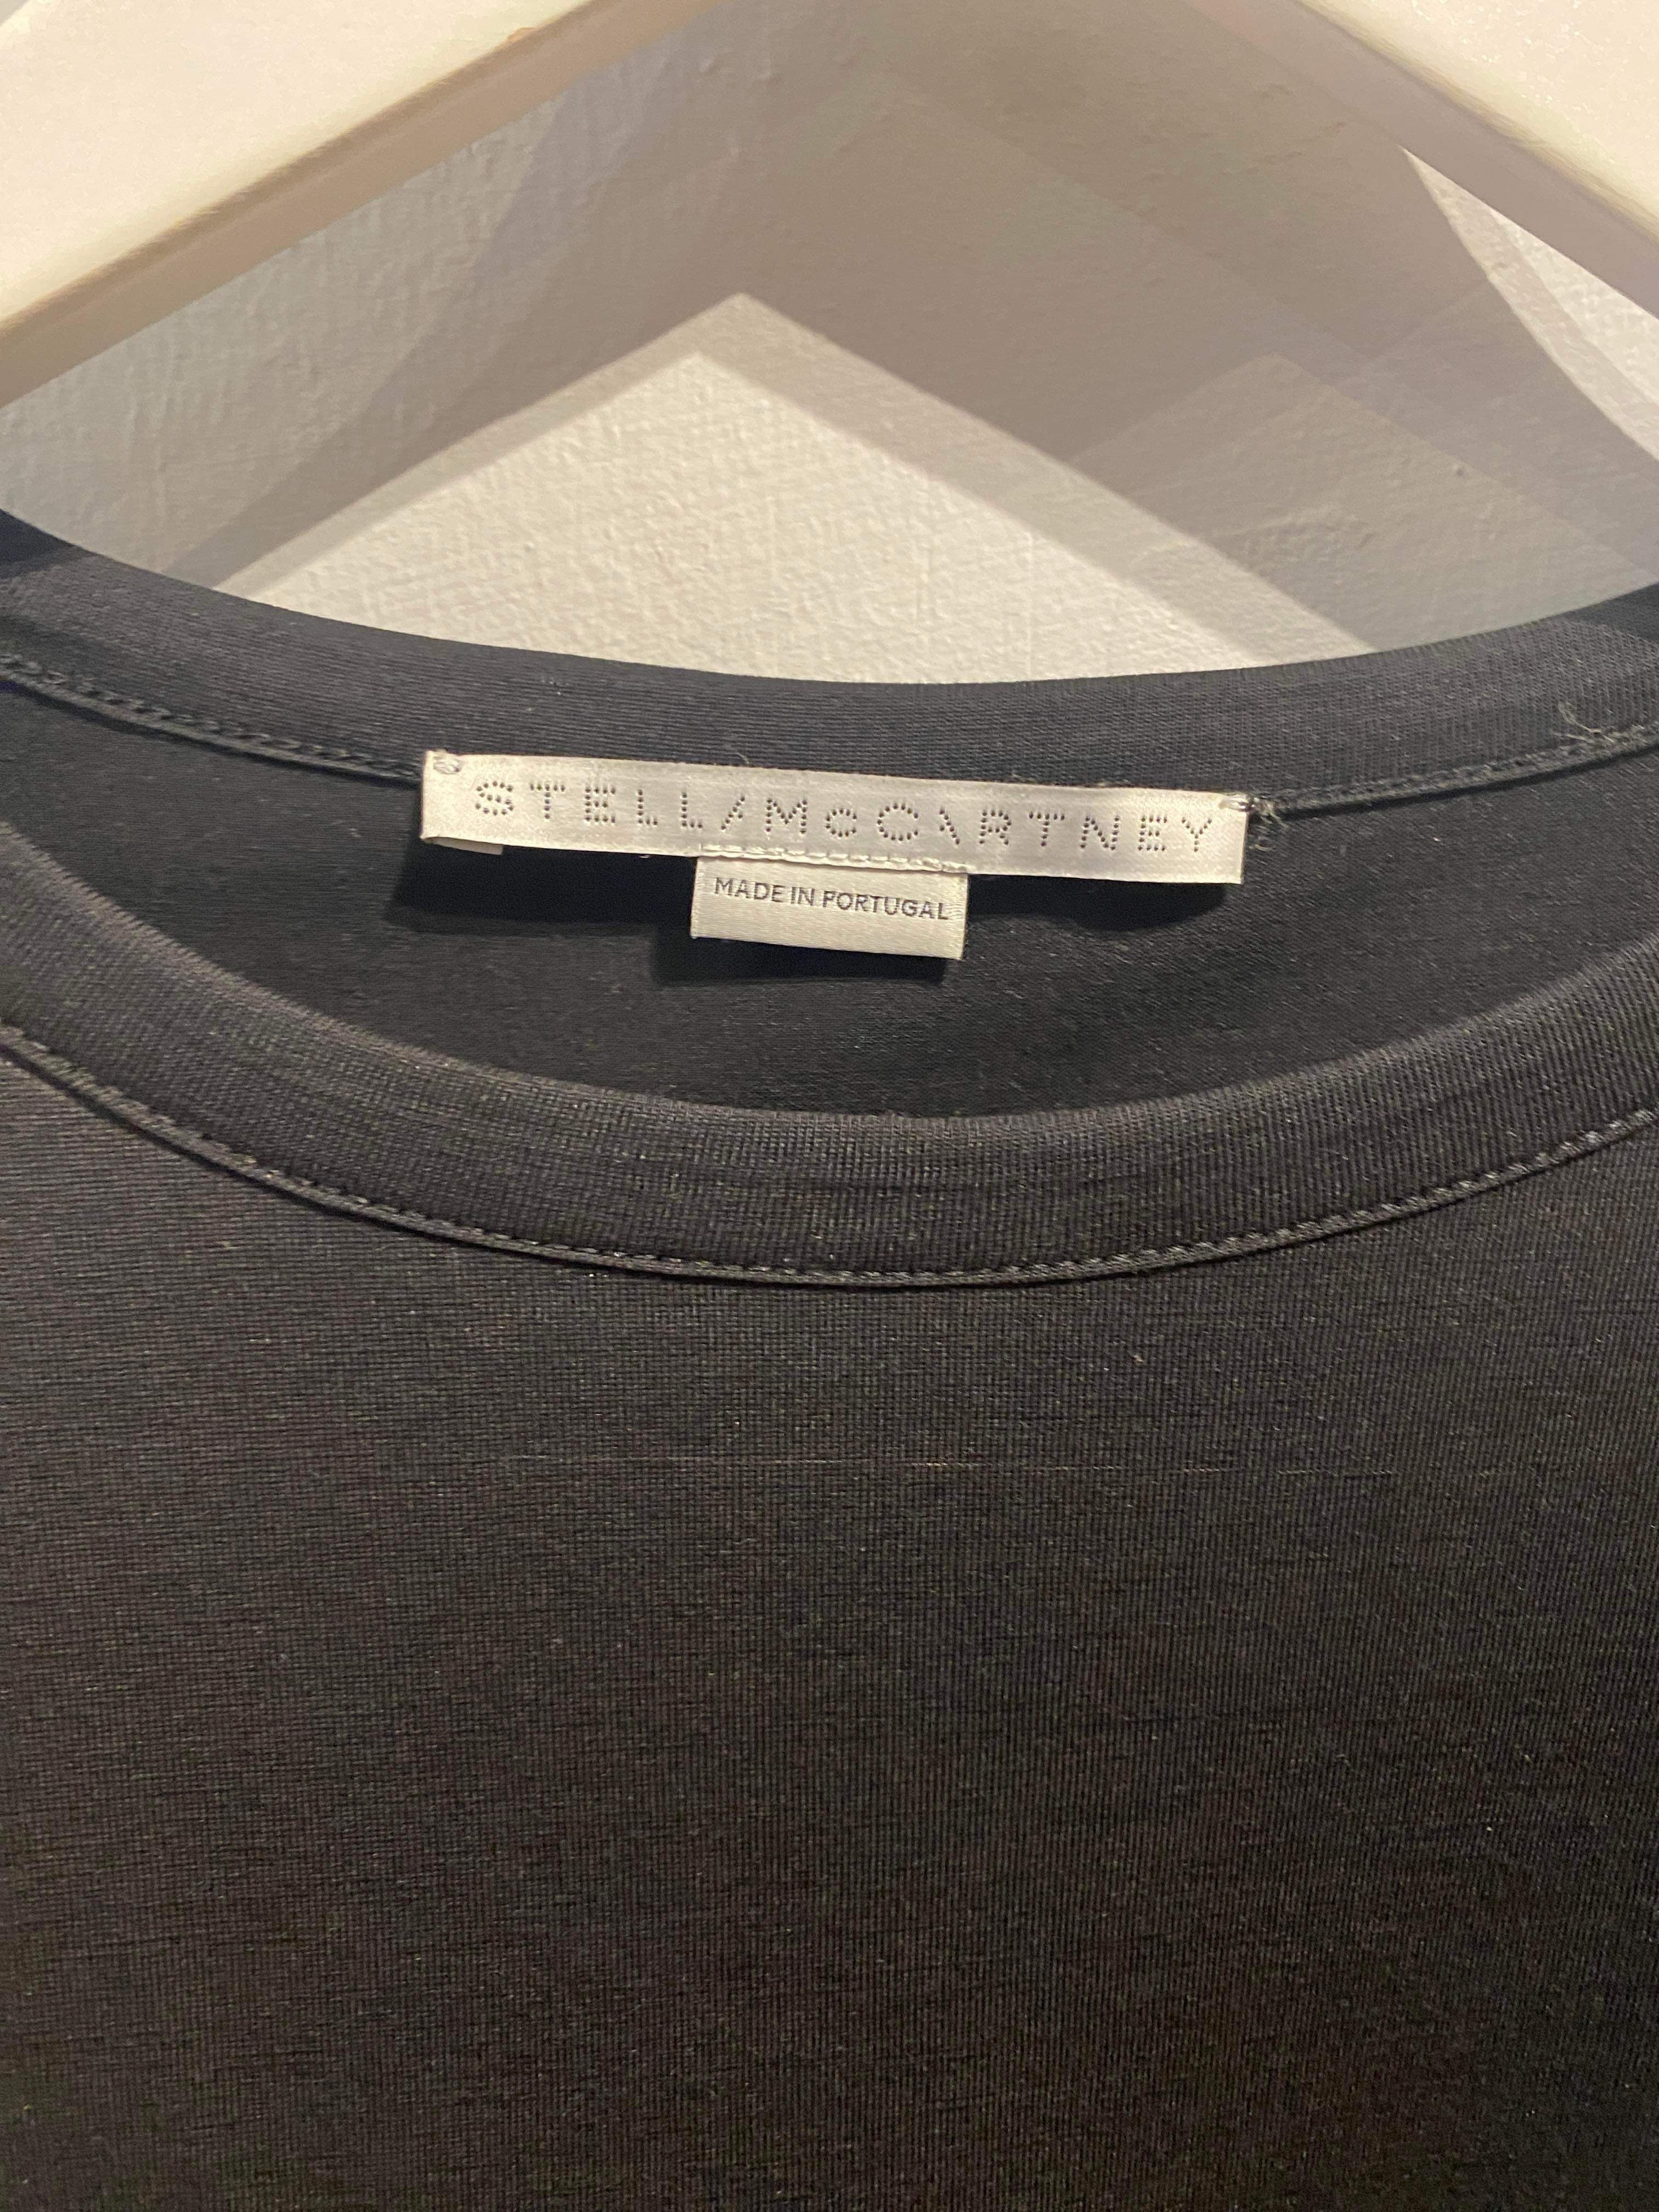 Stella McCartney - T-shirt - Size: 42